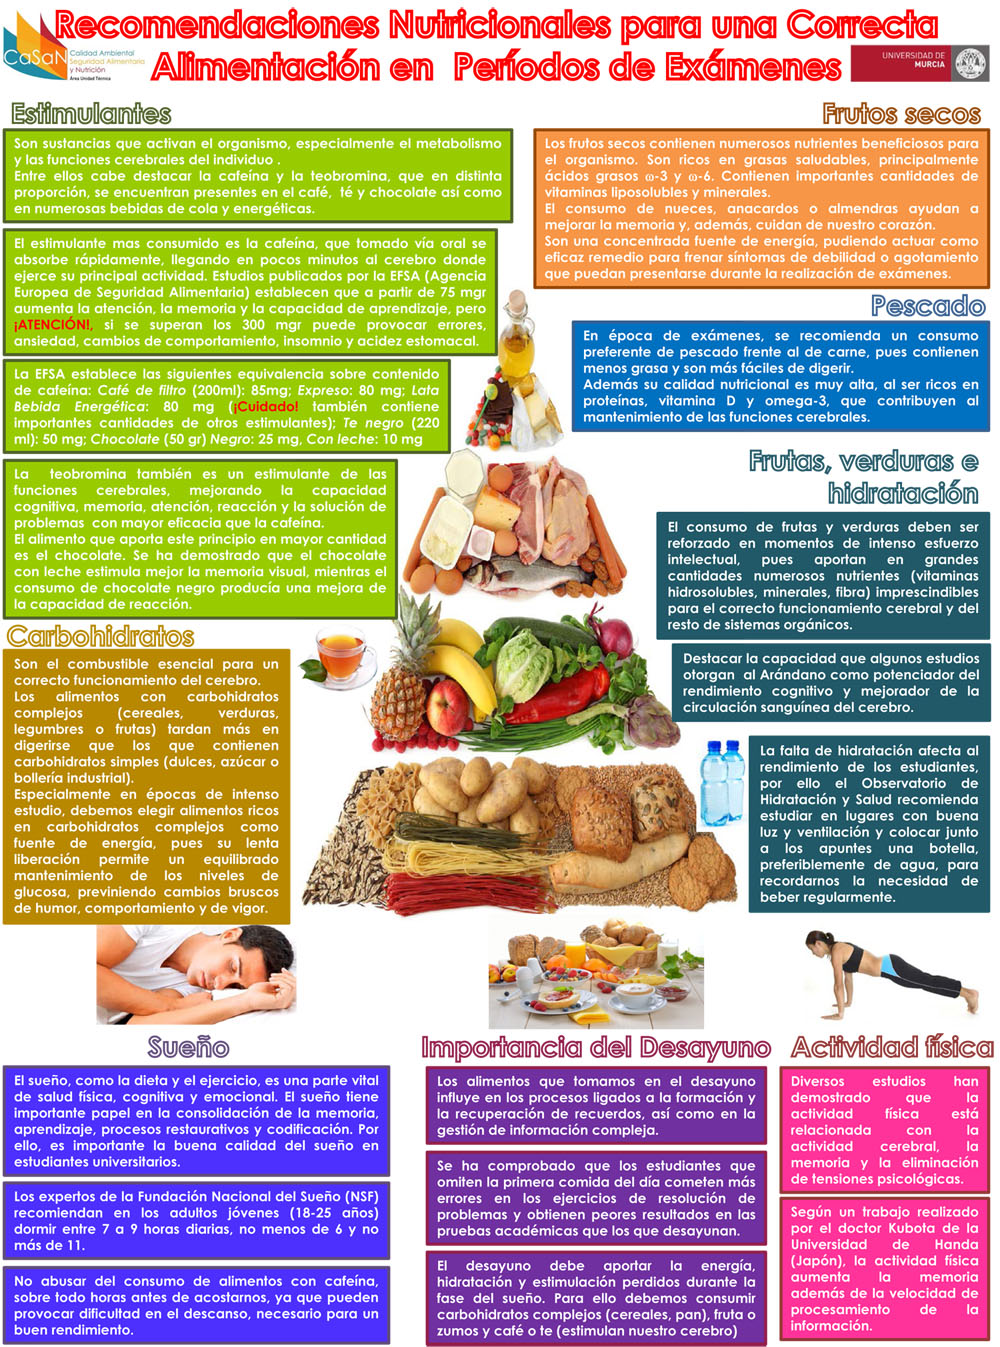 Recomendaciones nutricionales para periodo de Exámenes